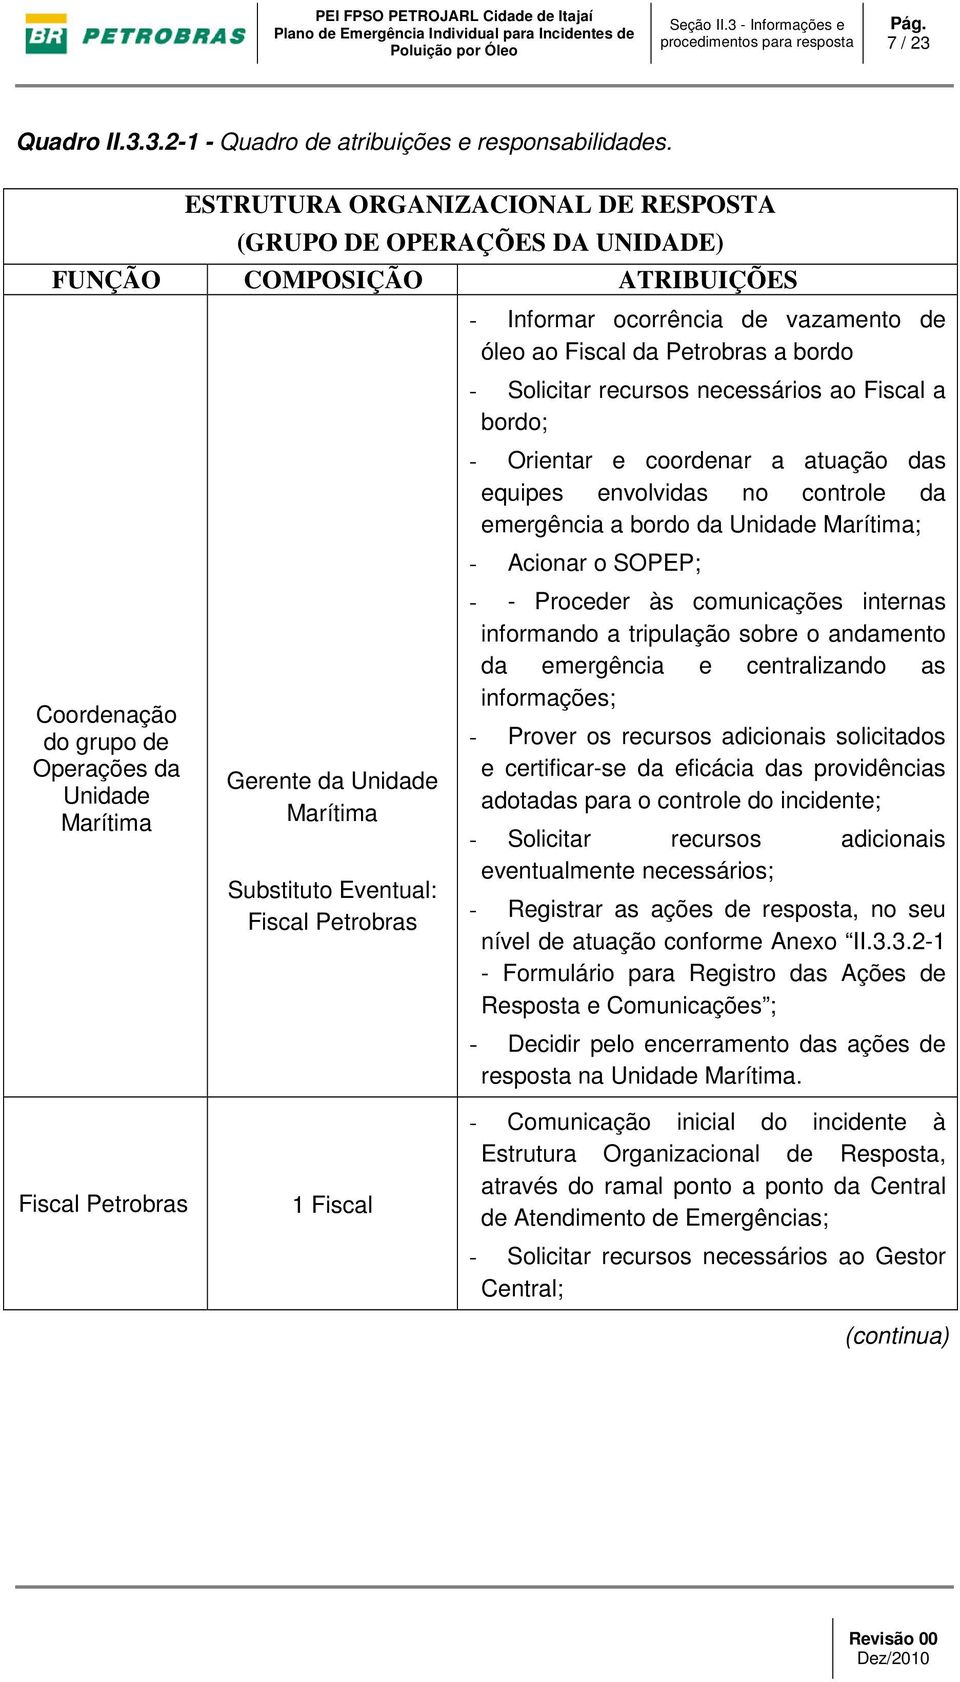 Eventual: Fiscal Petrobras - Informar ocorrência de vazamento de óleo ao Fiscal da Petrobras a bordo - Solicitar recursos necessários ao Fiscal a bordo; - Orientar e coordenar a atuação das equipes